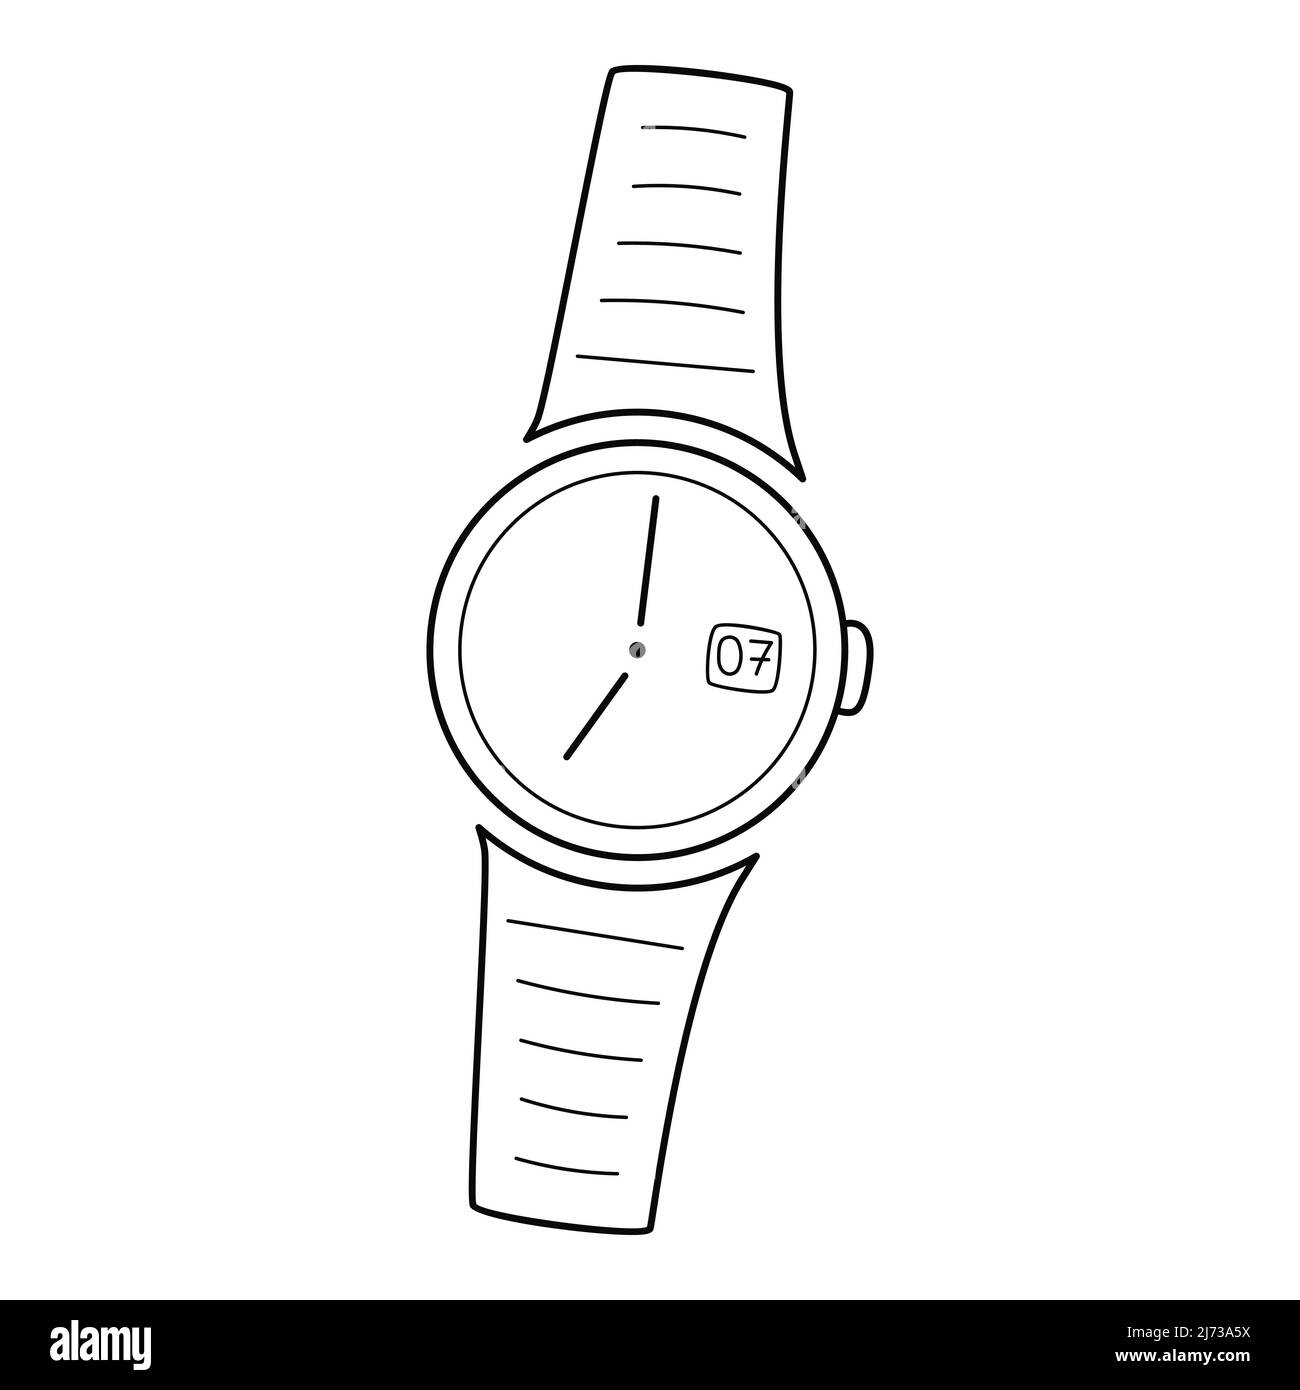 Mechanische analoge runde Armbanduhr mit Händen. Uhr mit Armband. Lineares  Symbol. Handgezeichnete schwarz-weiße Vektorgrafik. Isoliert auf einem Whit  Stock-Vektorgrafik - Alamy